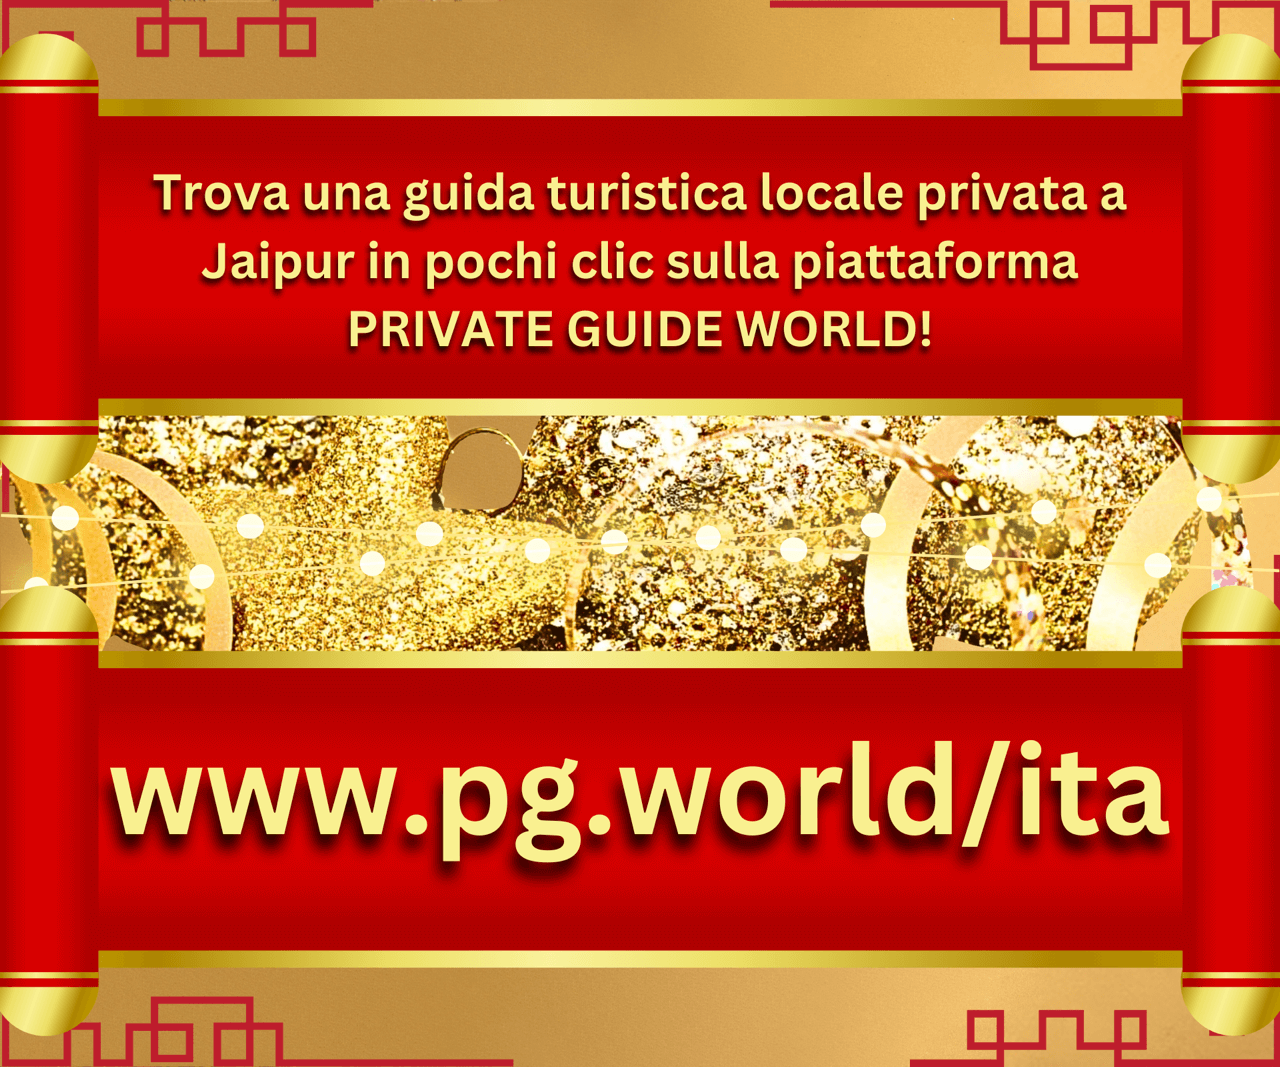 Trova una guida turistica privata locale a Jaipur in pochi clic su PRIVATE GUIDE WORLD PLATFORM su www.pg.world/ita!